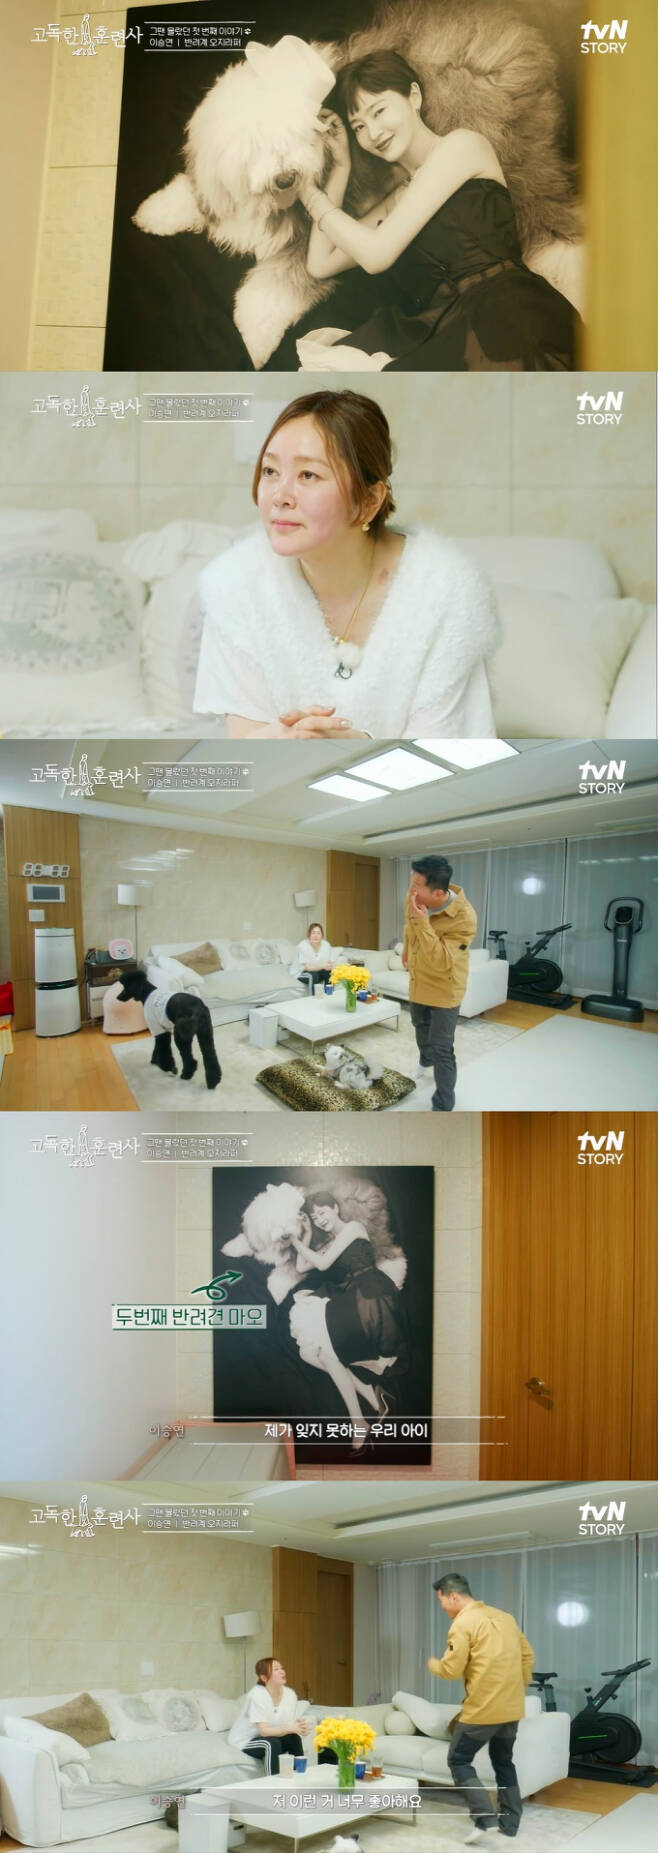 반려견 훈련사 강형욱이 배우 이승연에게 사과하는 모습이 전파를 탔다. /사진=tvN 방송캡처